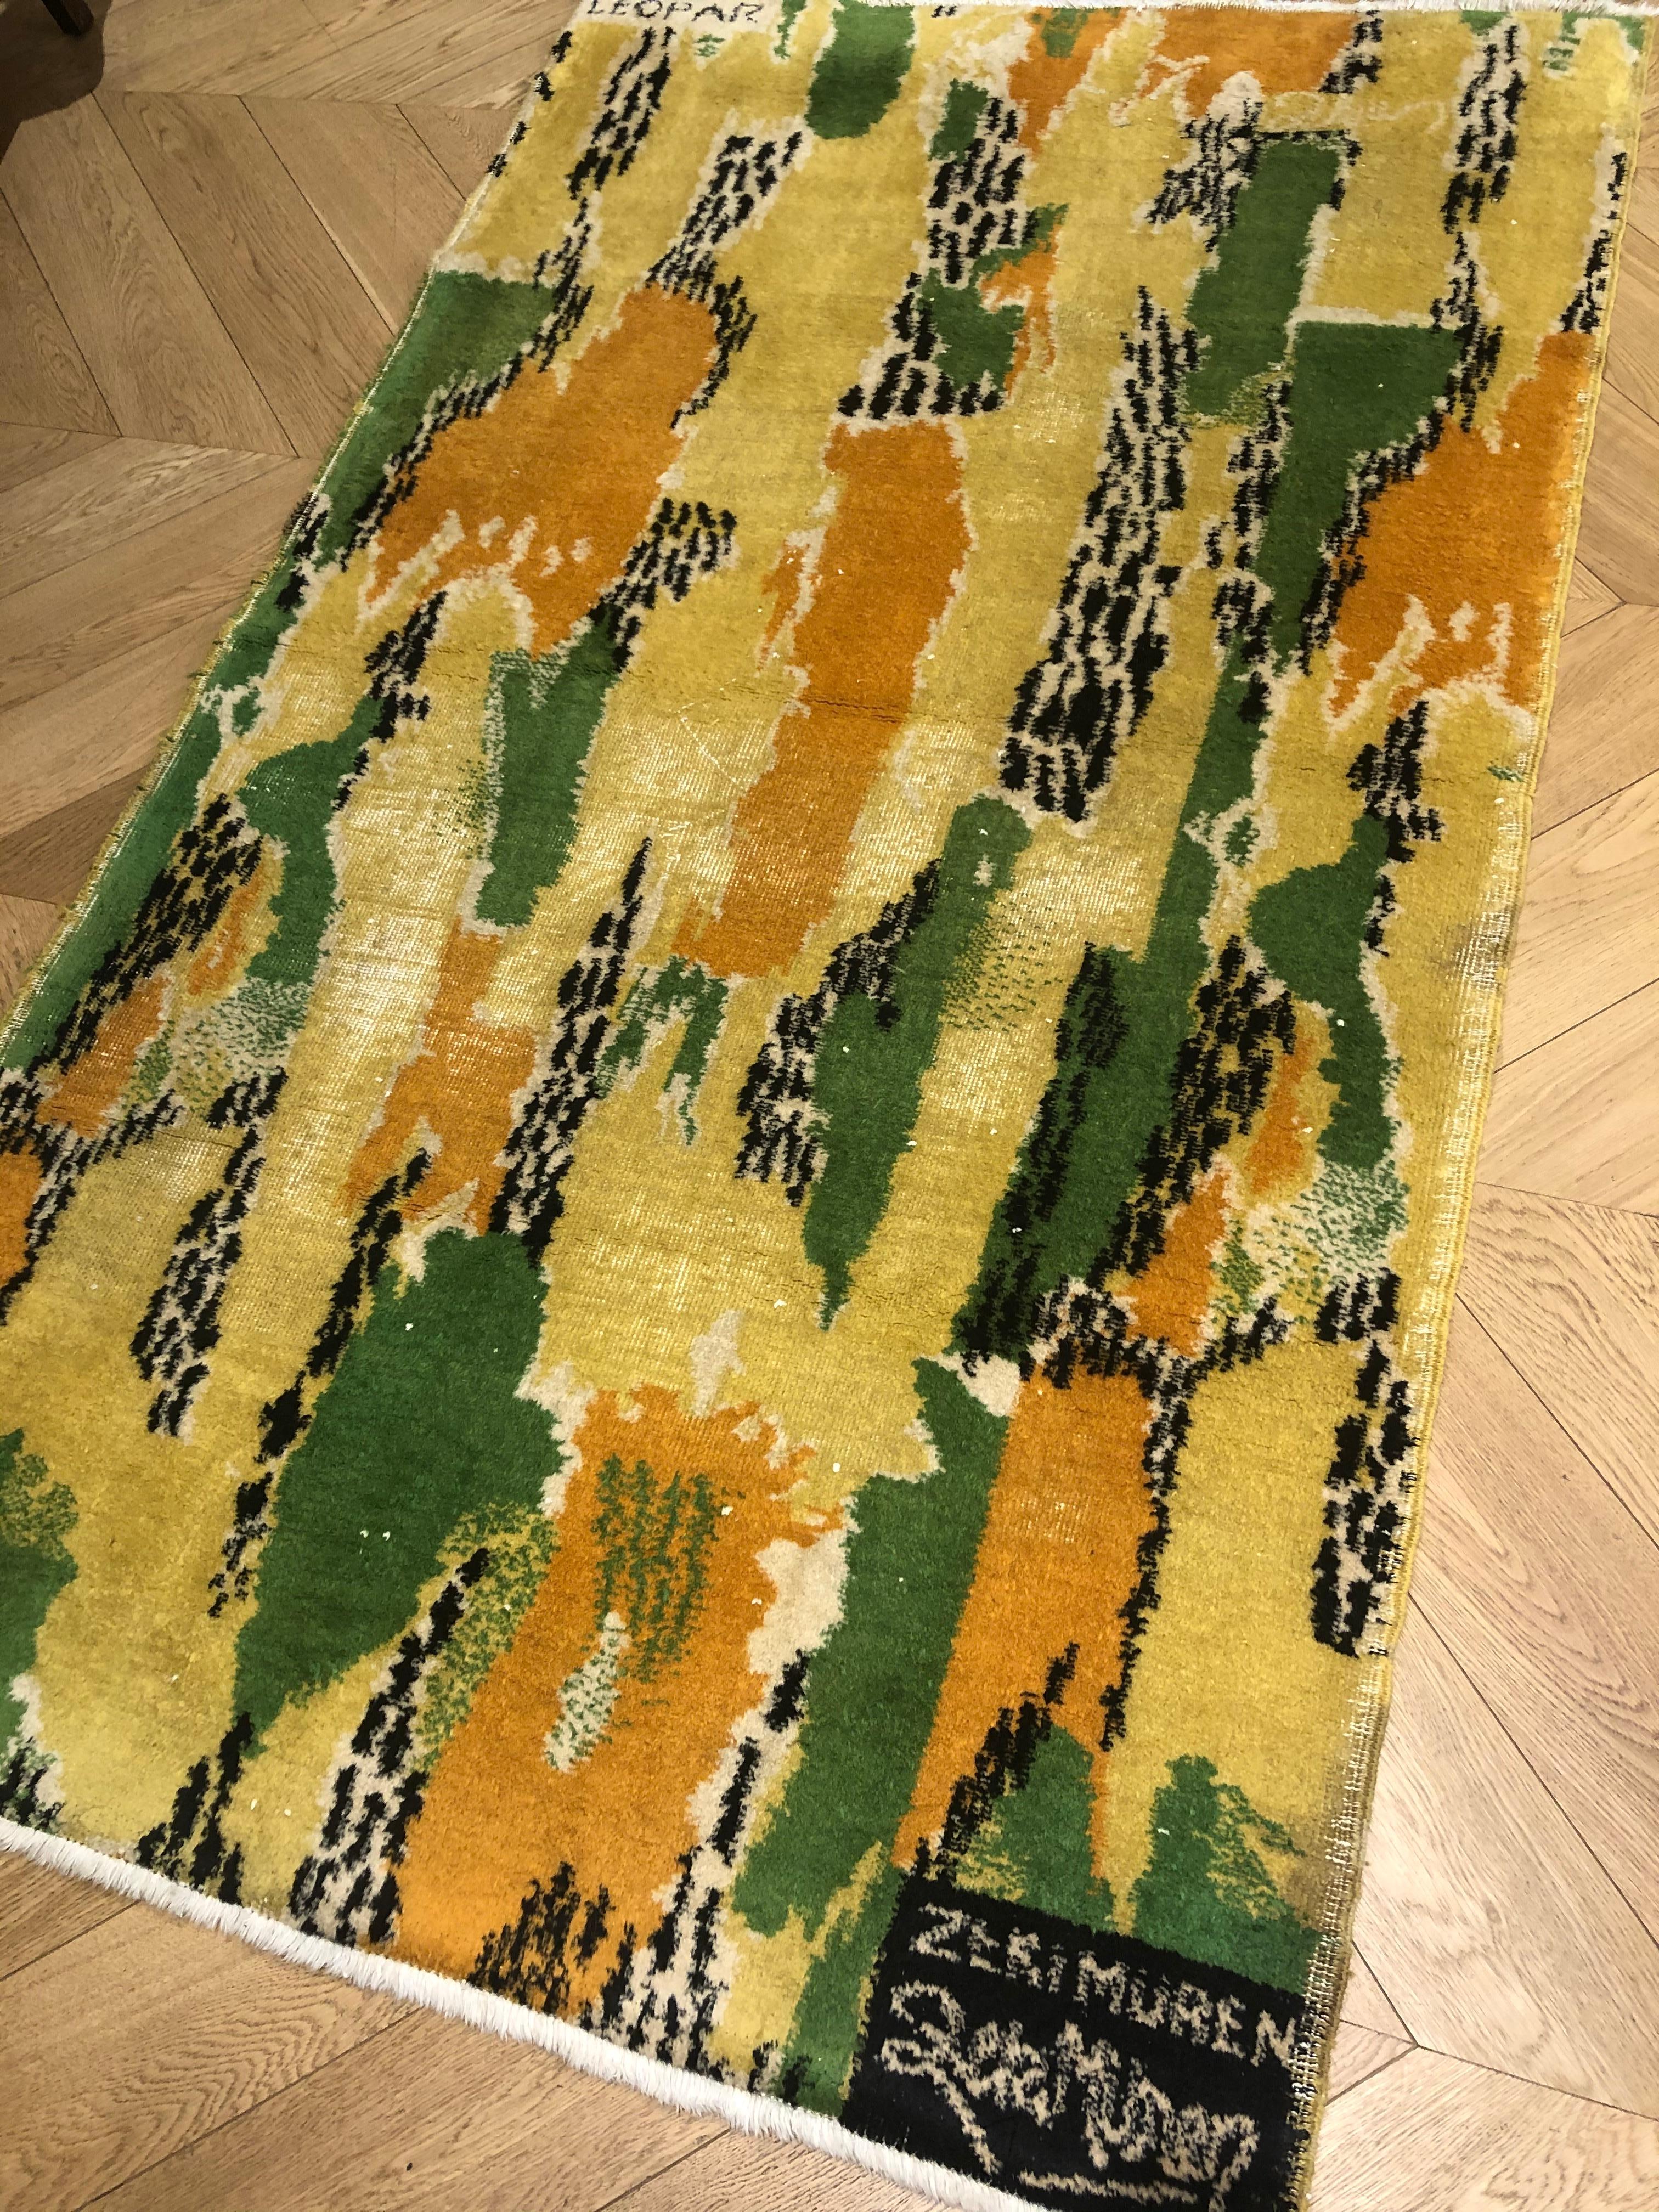 yellow and orange rugs